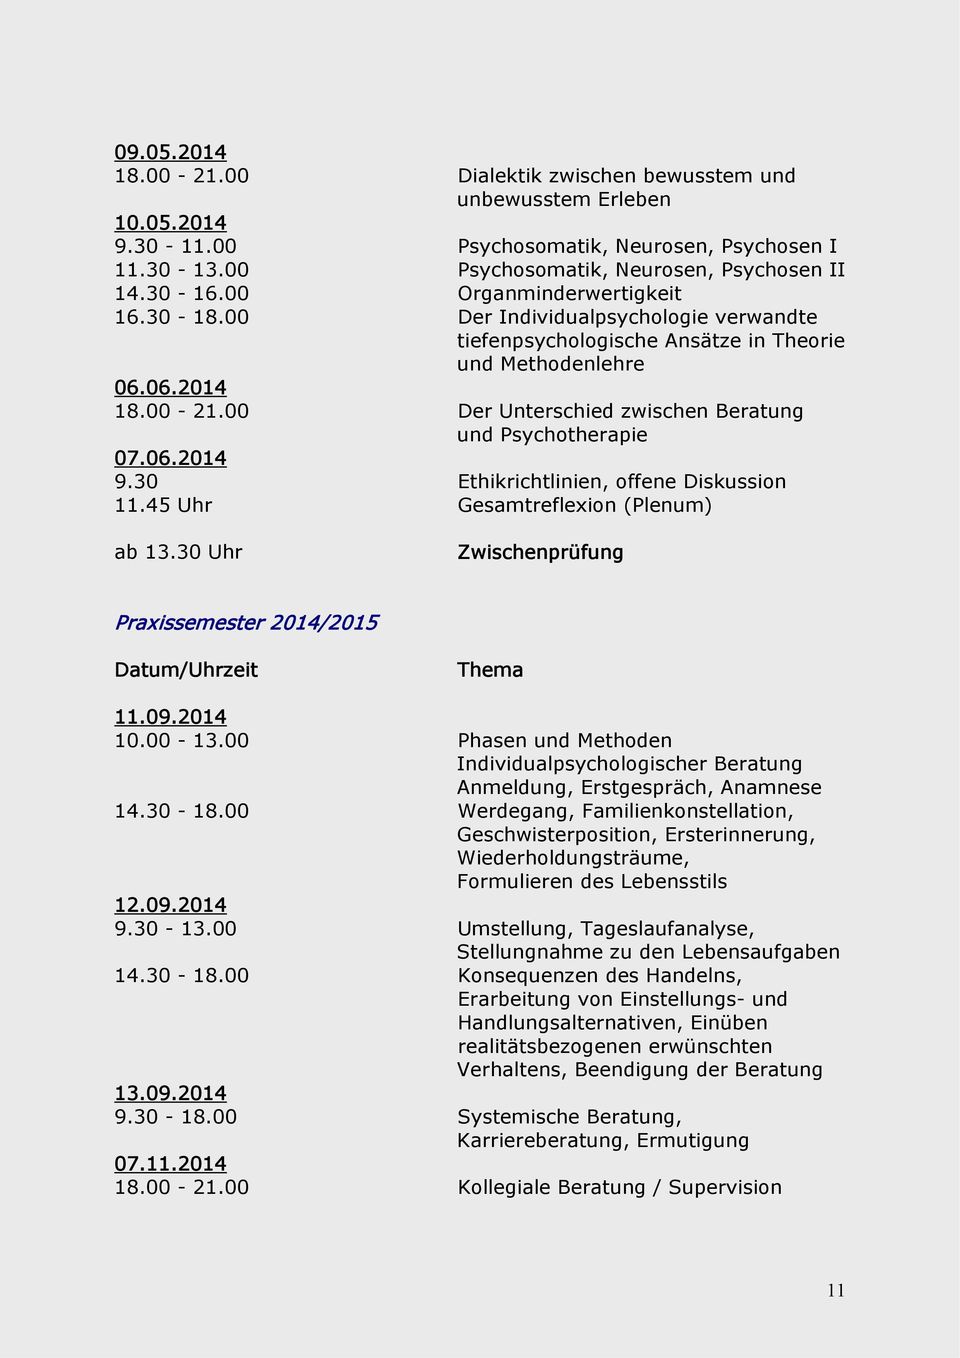 00 Der Unterschied zwischen Beratung und Psychotherapie 07.06.2014 9.30 Ethikrichtlinien, offene Diskussion 11.45 Uhr Gesamtreflexion (Plenum) ab 13.